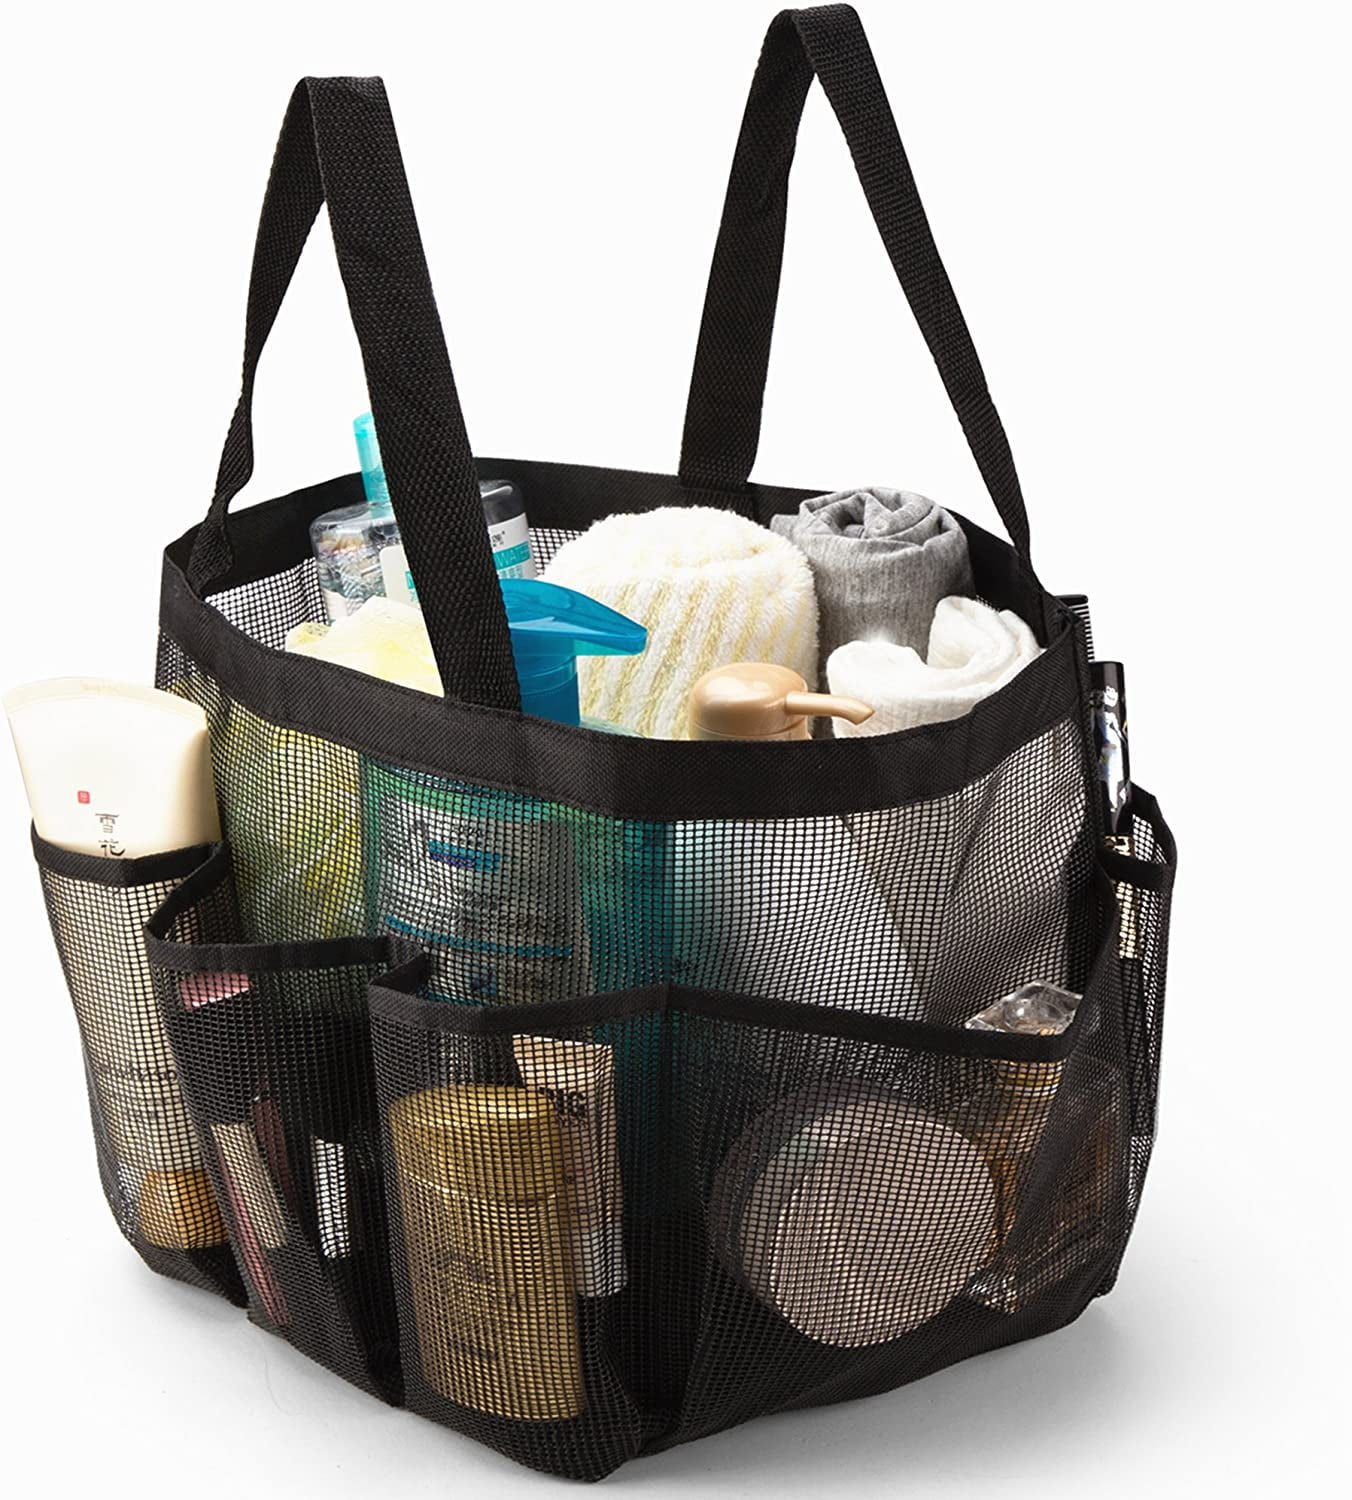 EE_ AF_ Portable Mesh Shower Caddy Organizer Storage Basket Travel Tote Bath Bag 